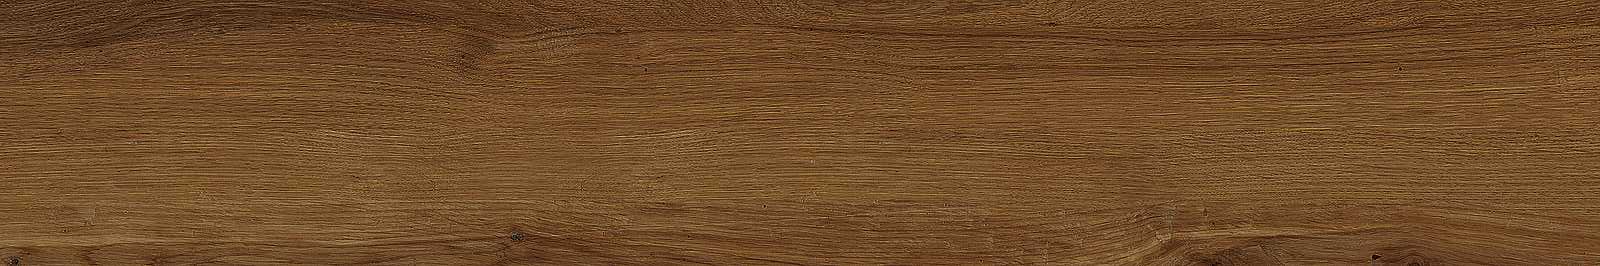 MARAZZI TREVERKLIFE WALNUT MQYP 20x120 cm dlažba imitácia dreva -15%